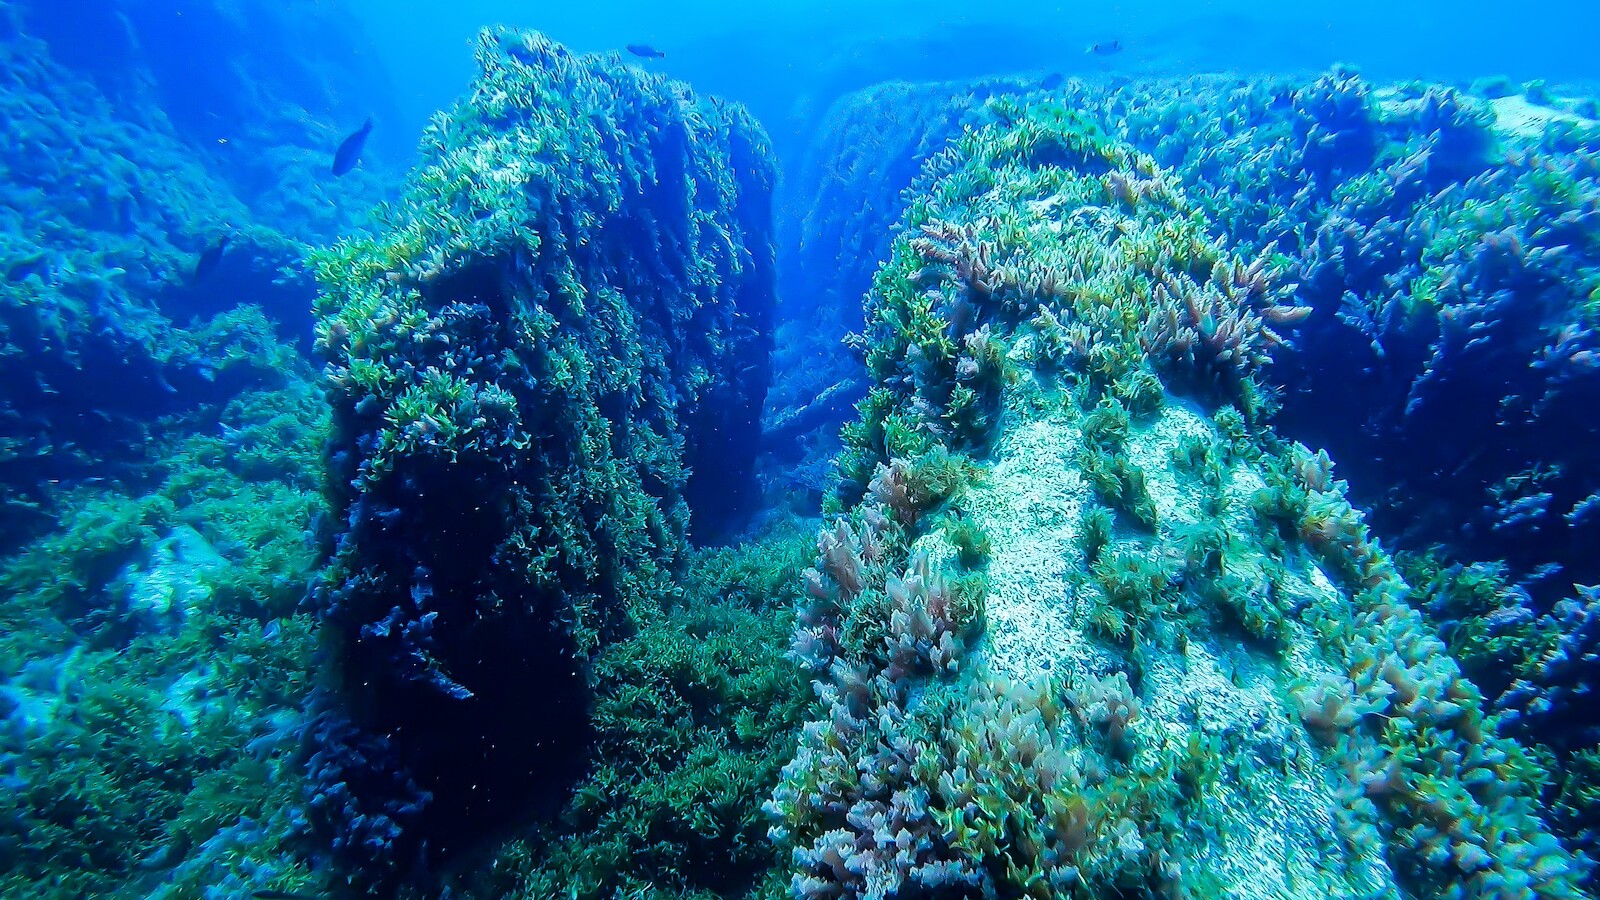 Benghisa Reef